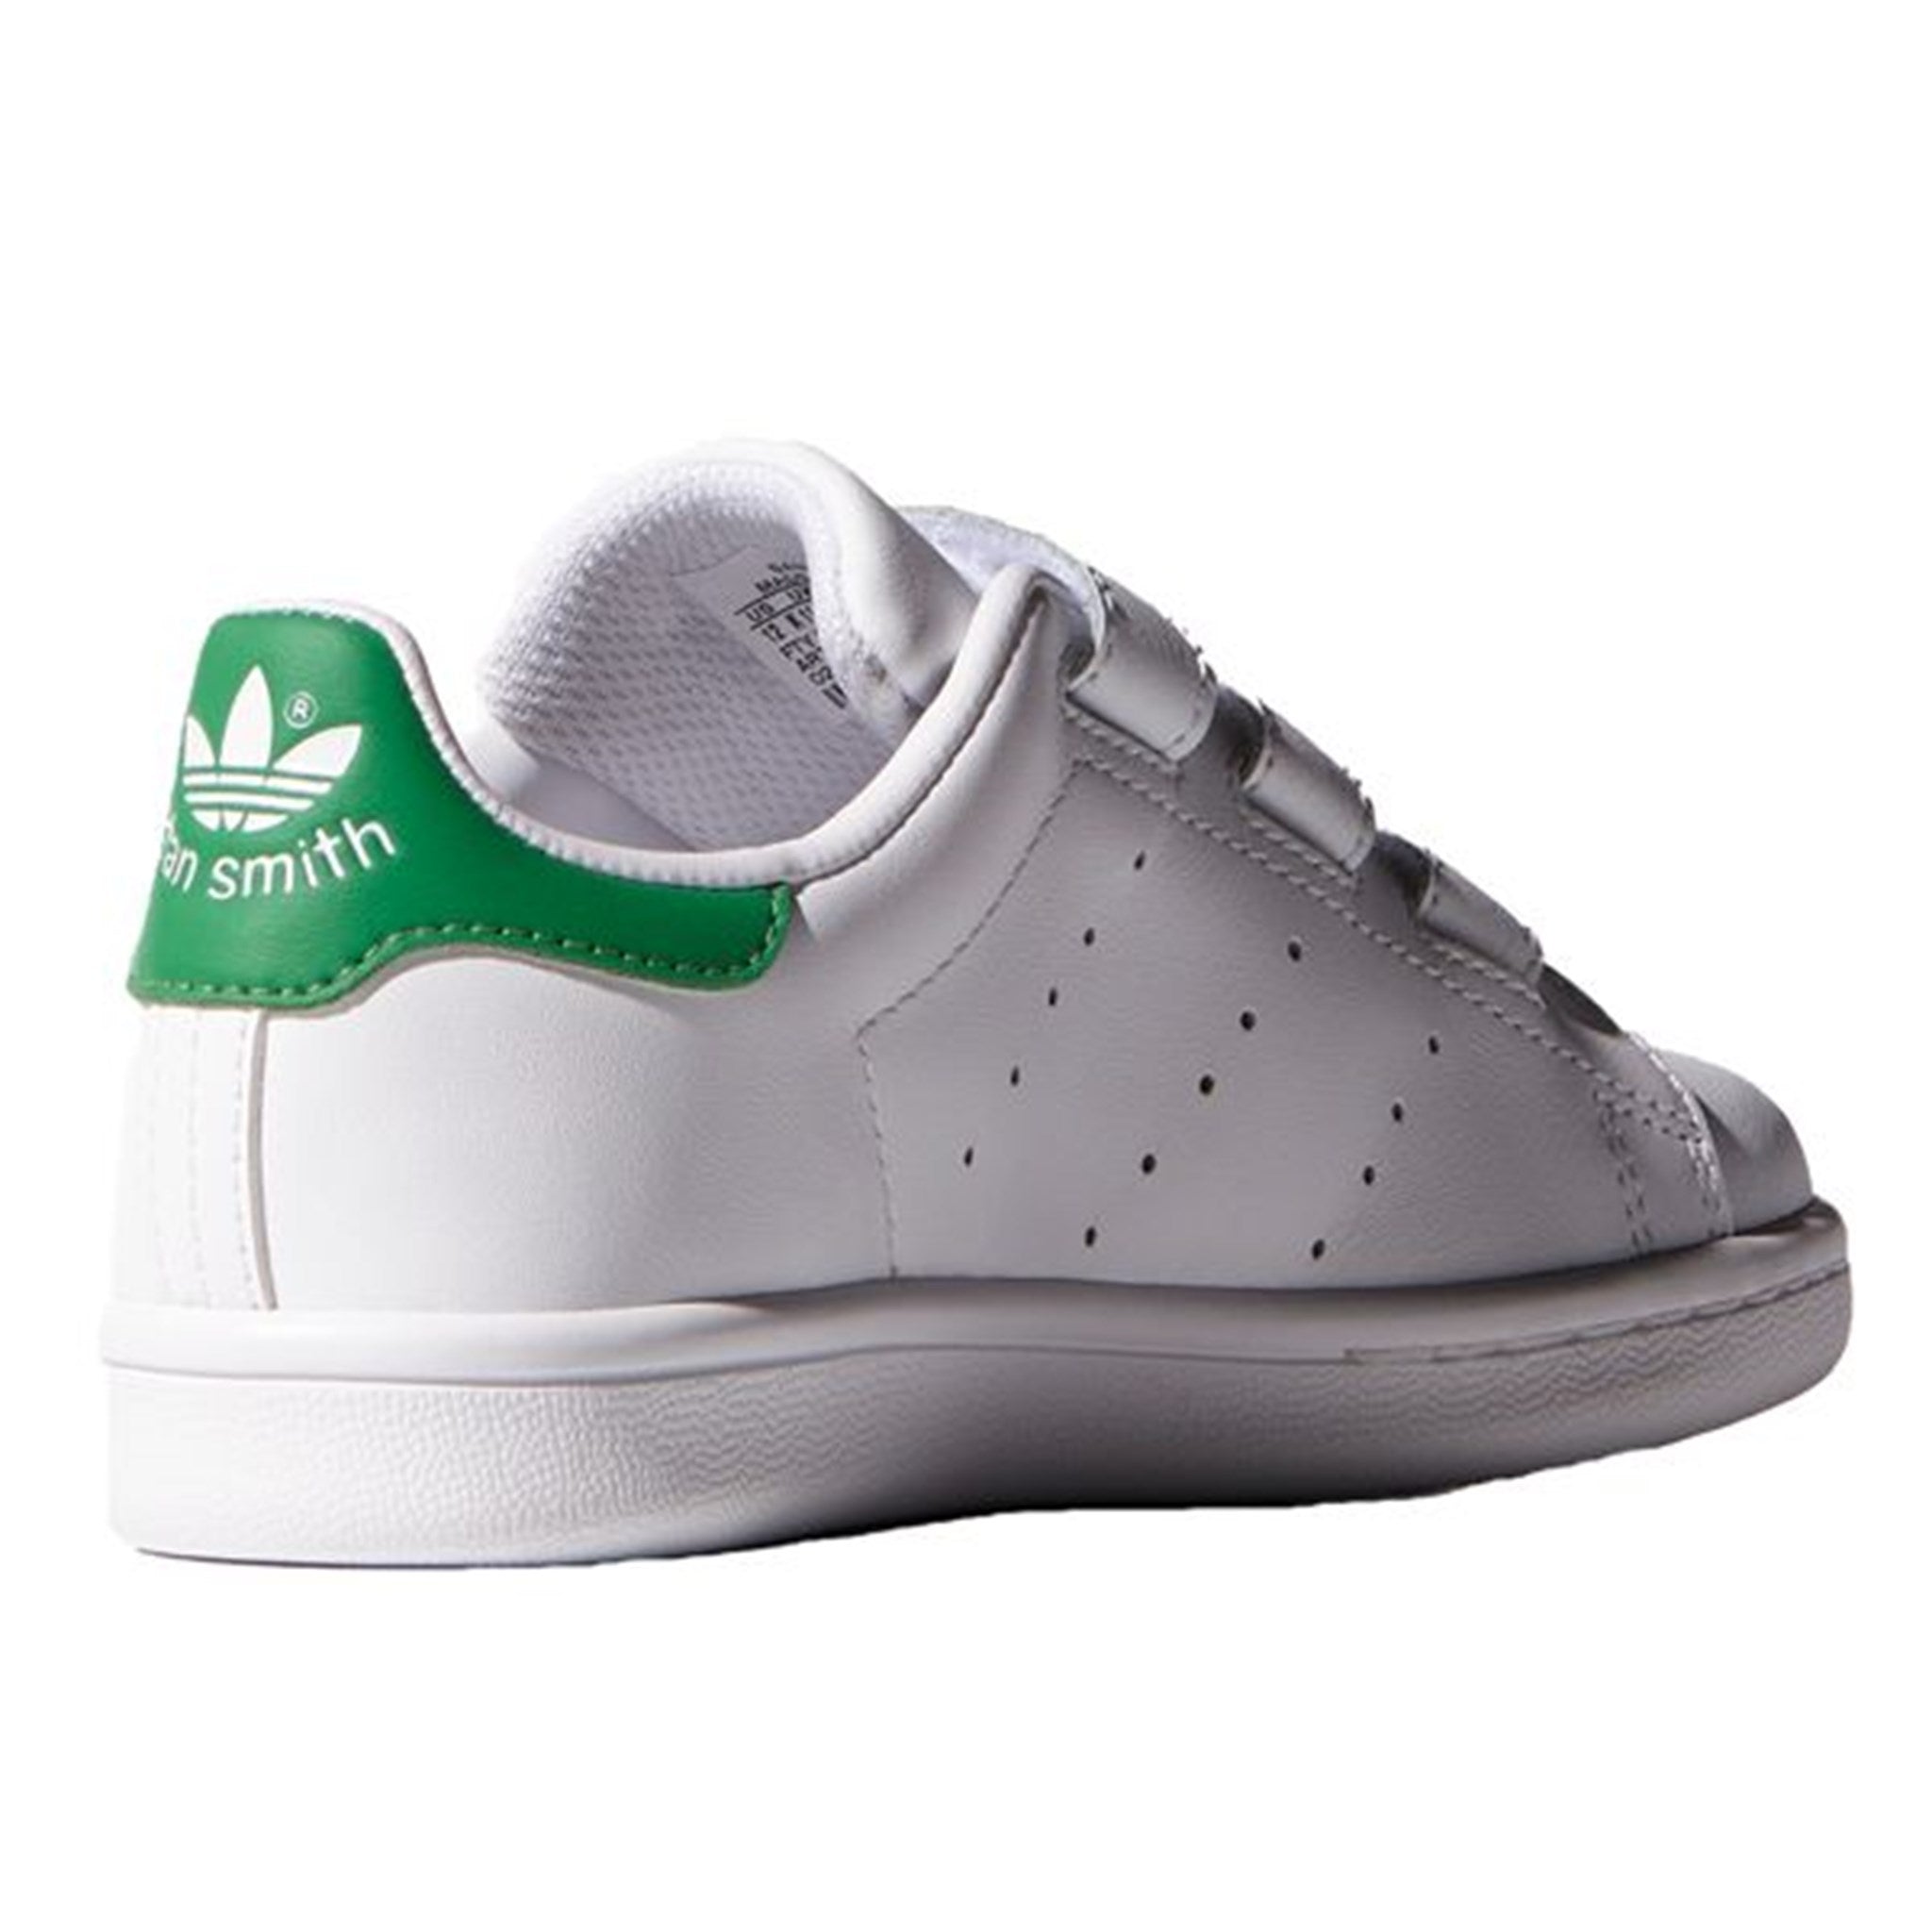 adidas Stan Smith Sneakers White/Green M20607 2